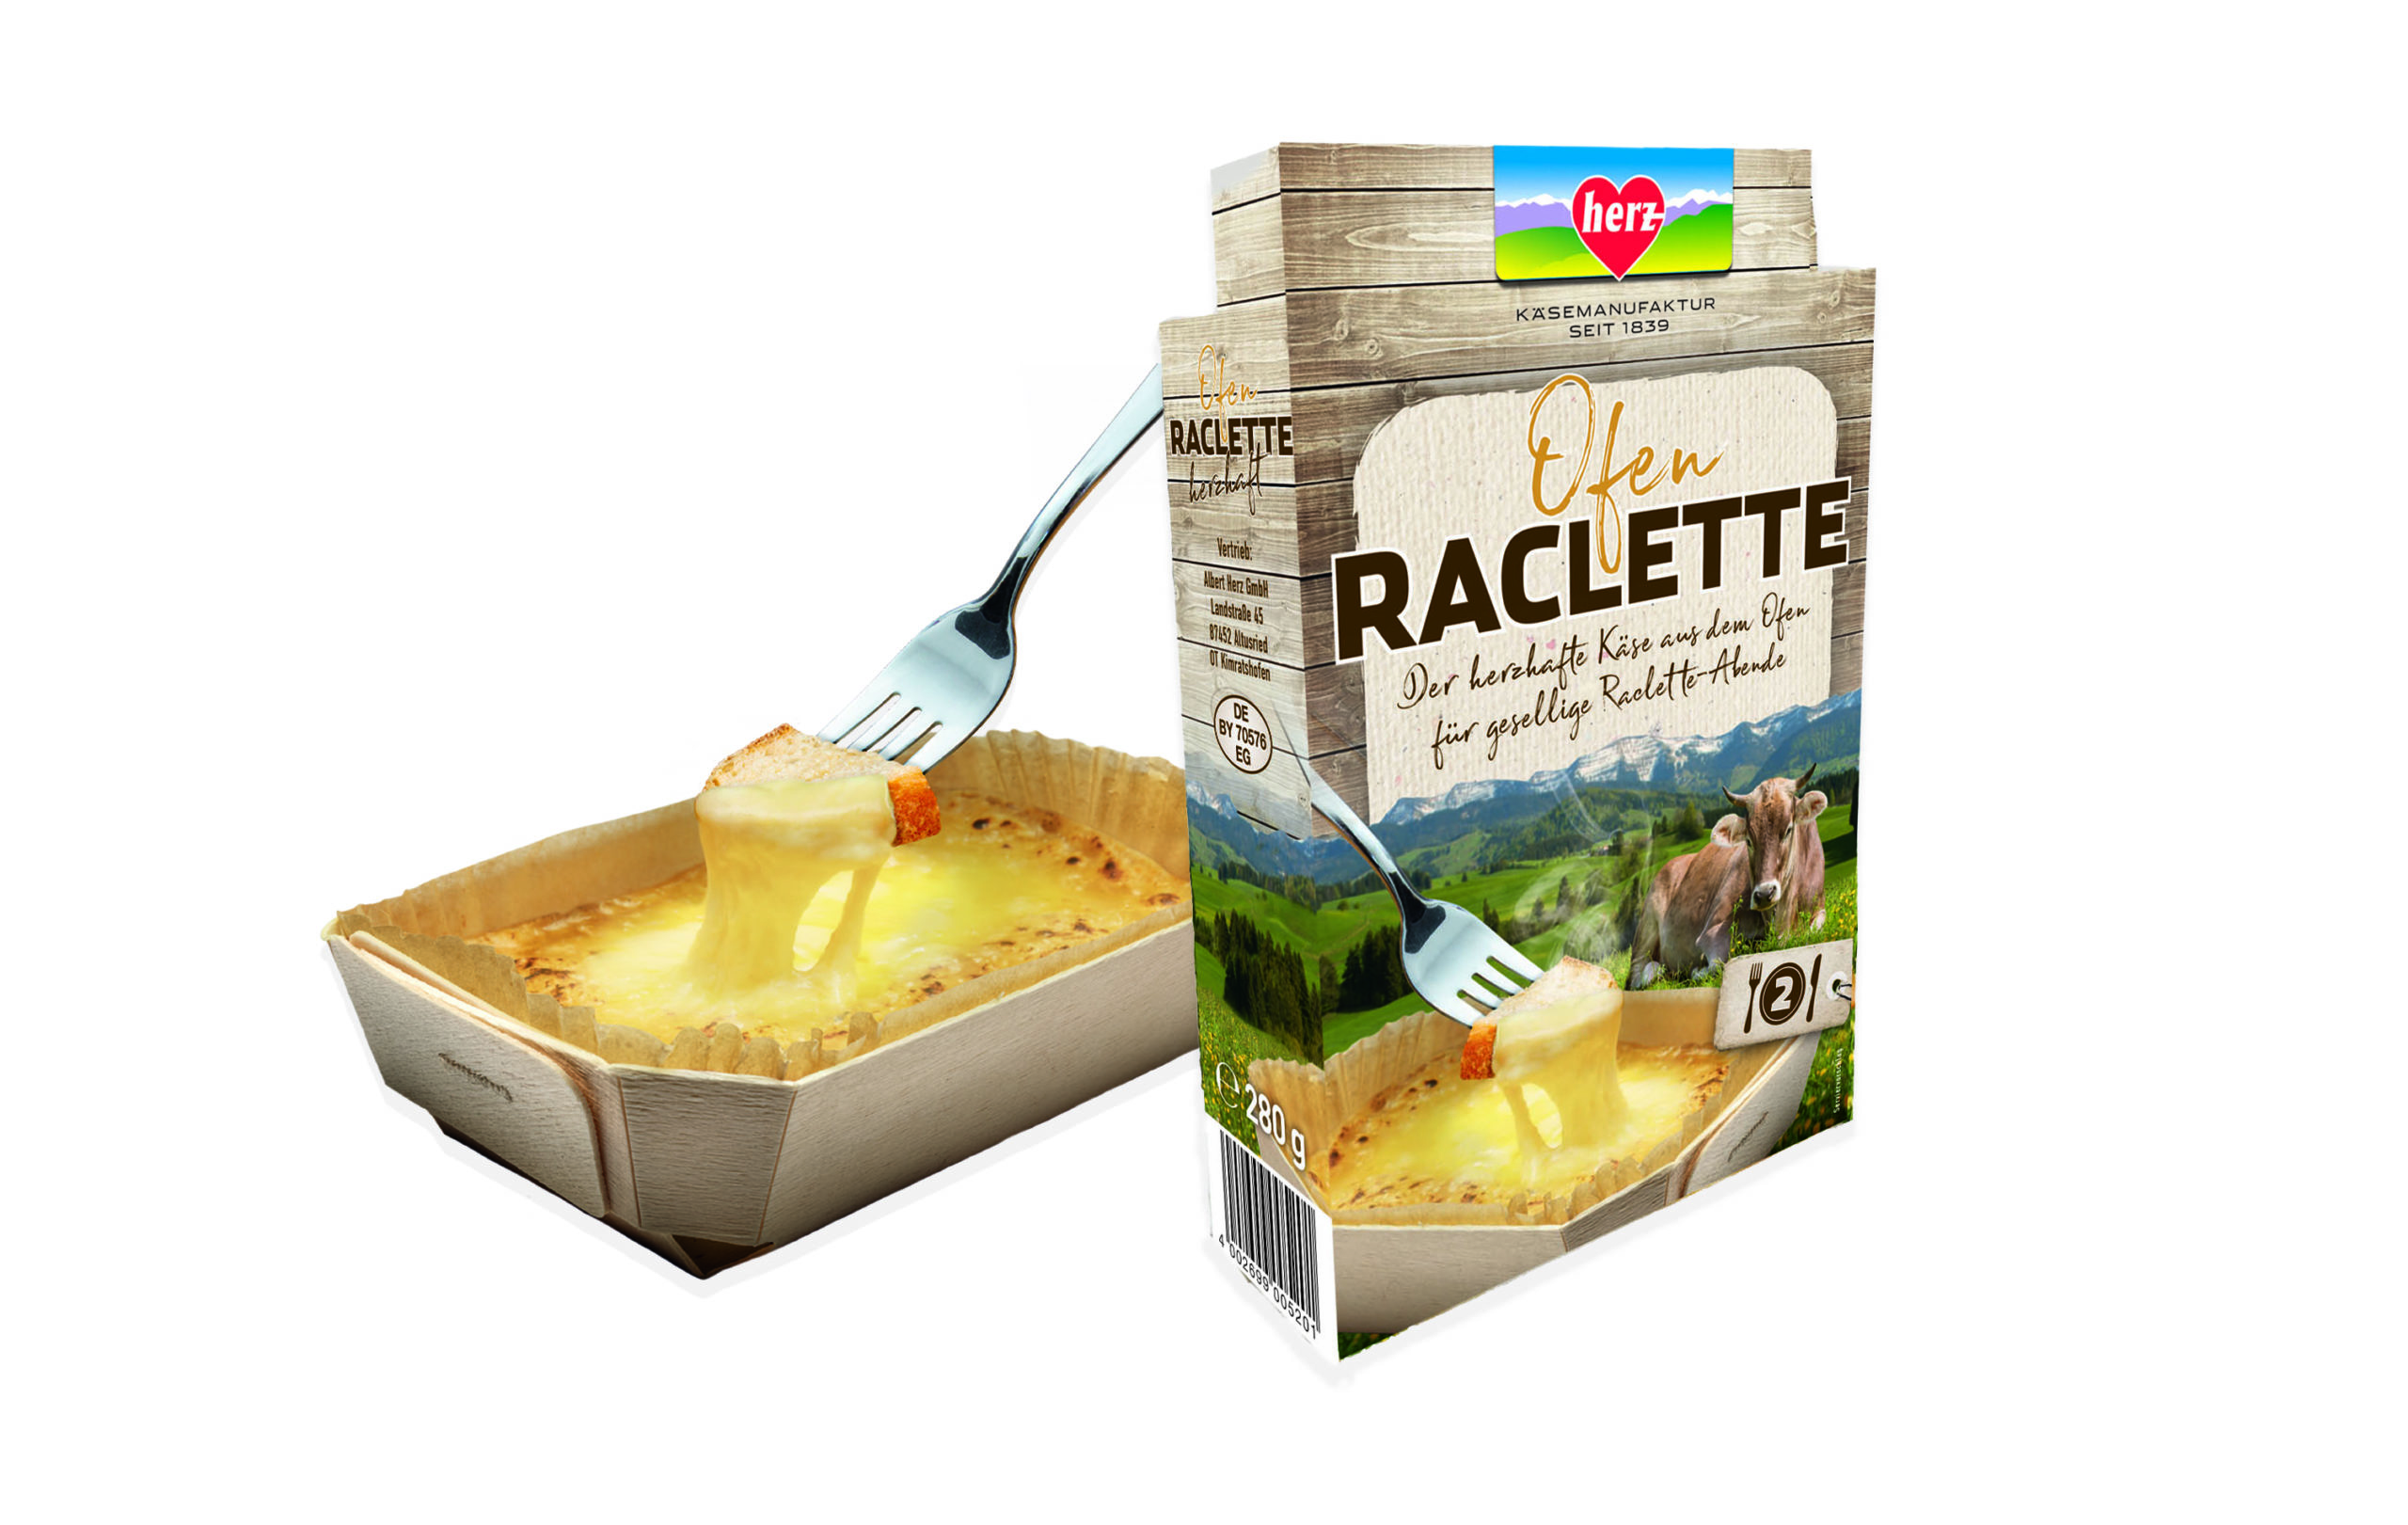 Ofen-Raclette – Der herzhafte Käse aus dem ofen für gesellige Raclette-Abende